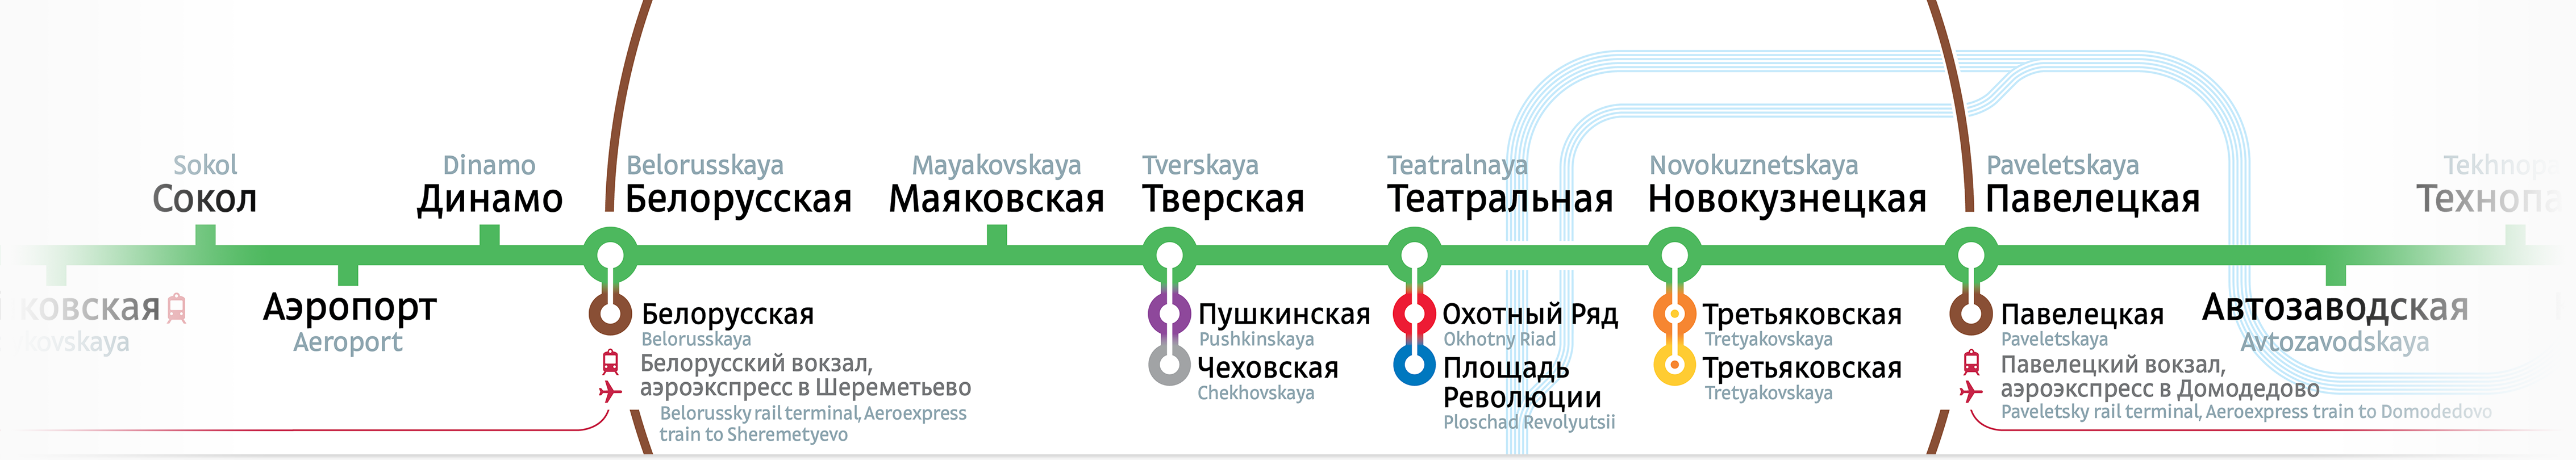 Павелецкий вокзал шереметьево расстояние